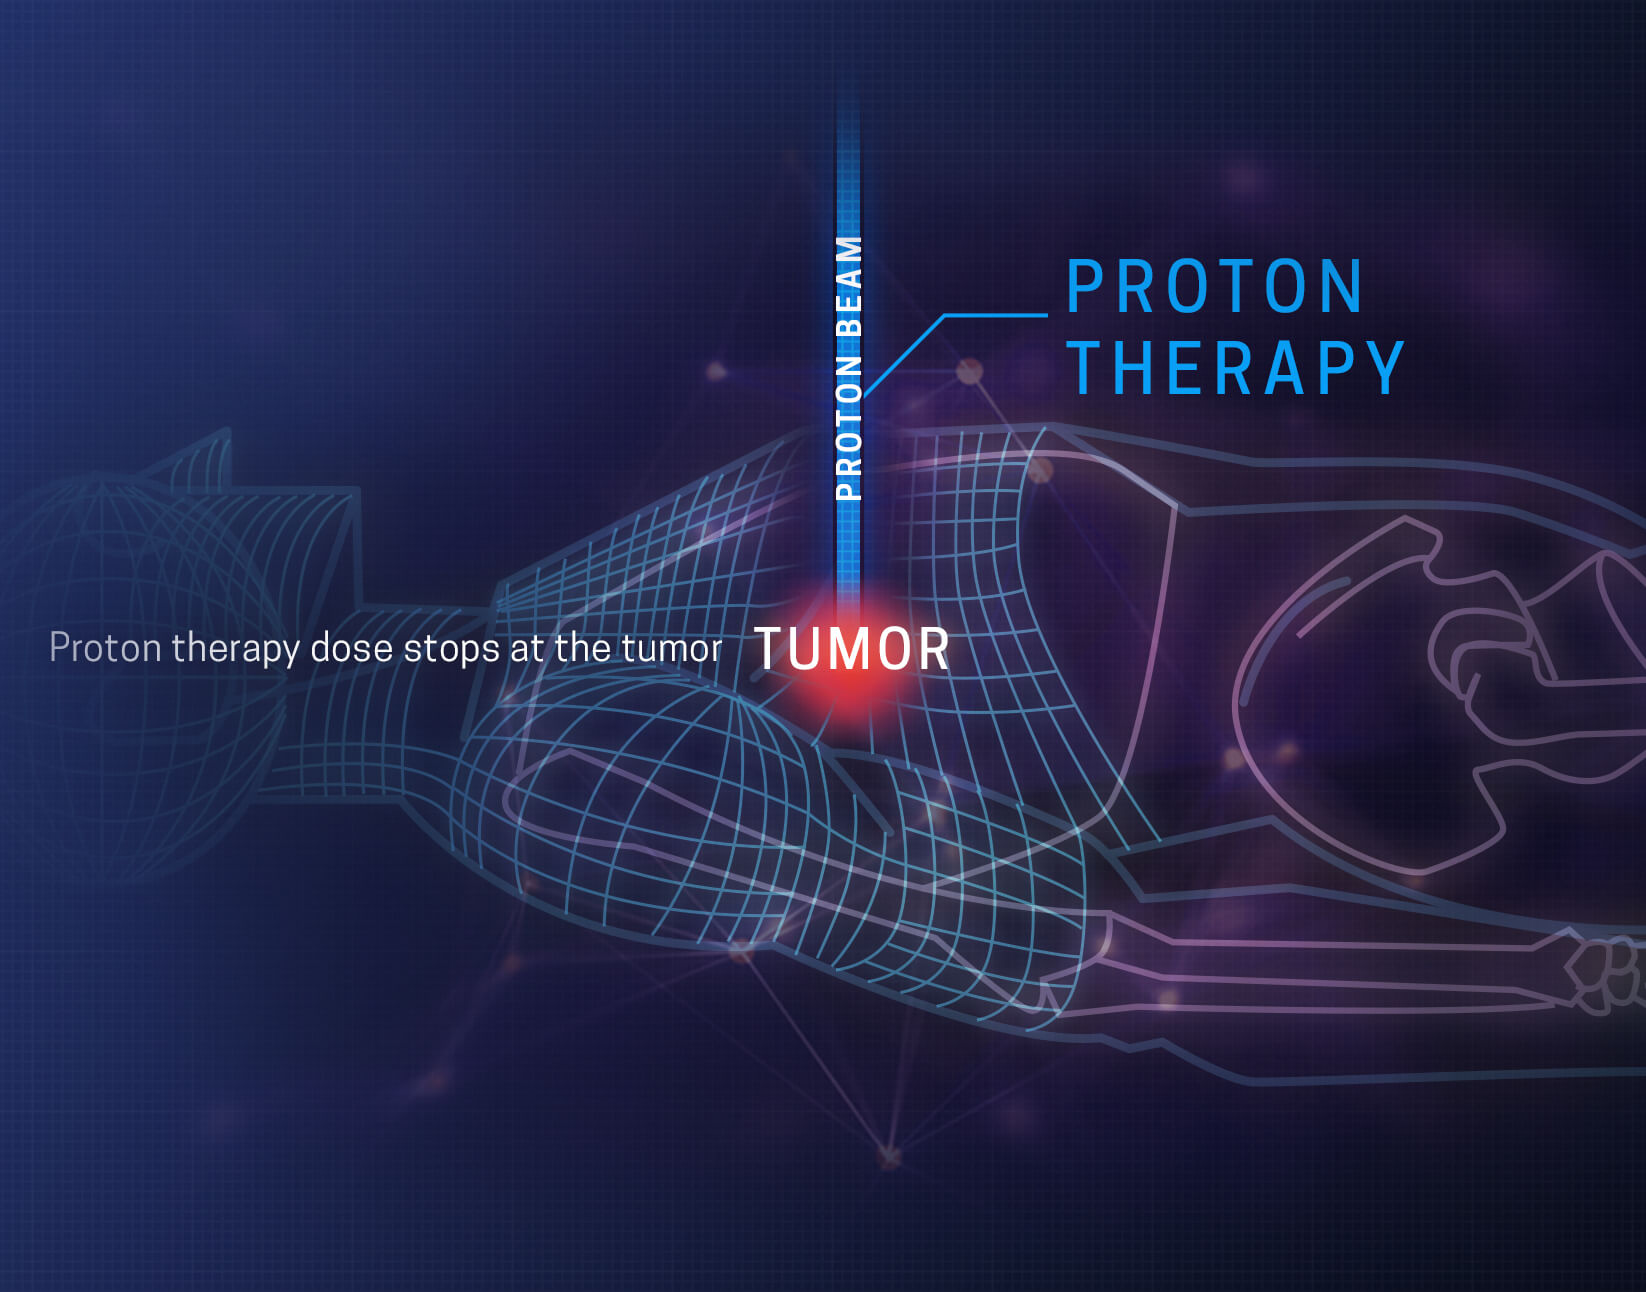 Përfitimet e terapisë me protone nga protonet e CA në San Diego